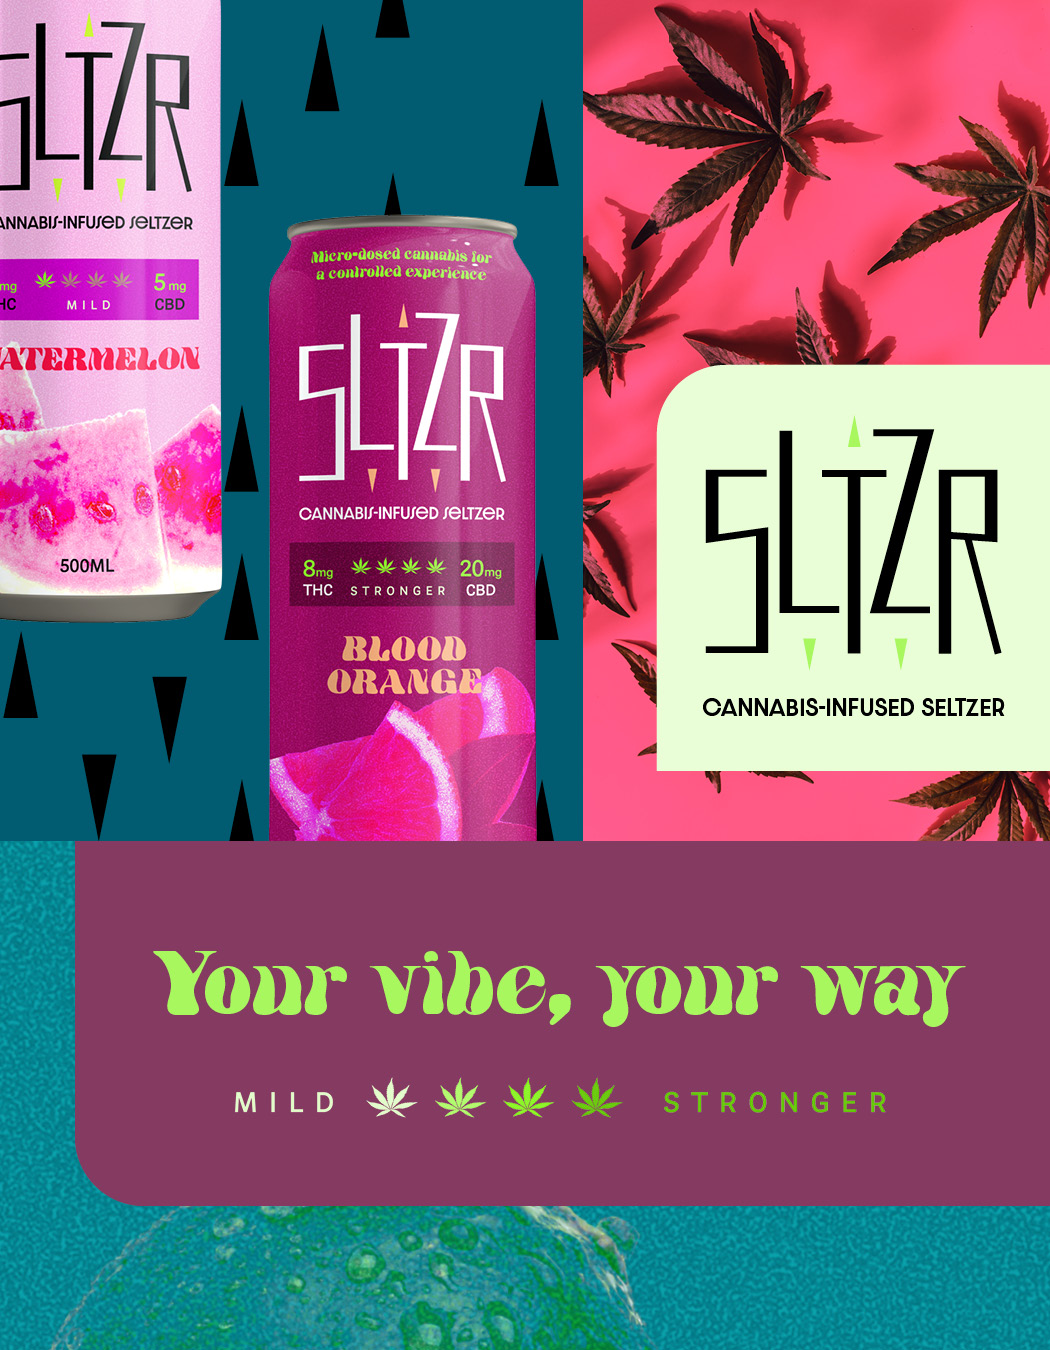 sltzr-ontario-toronto-graphic-brand-design-cannabis-seltzer-beverage-ft